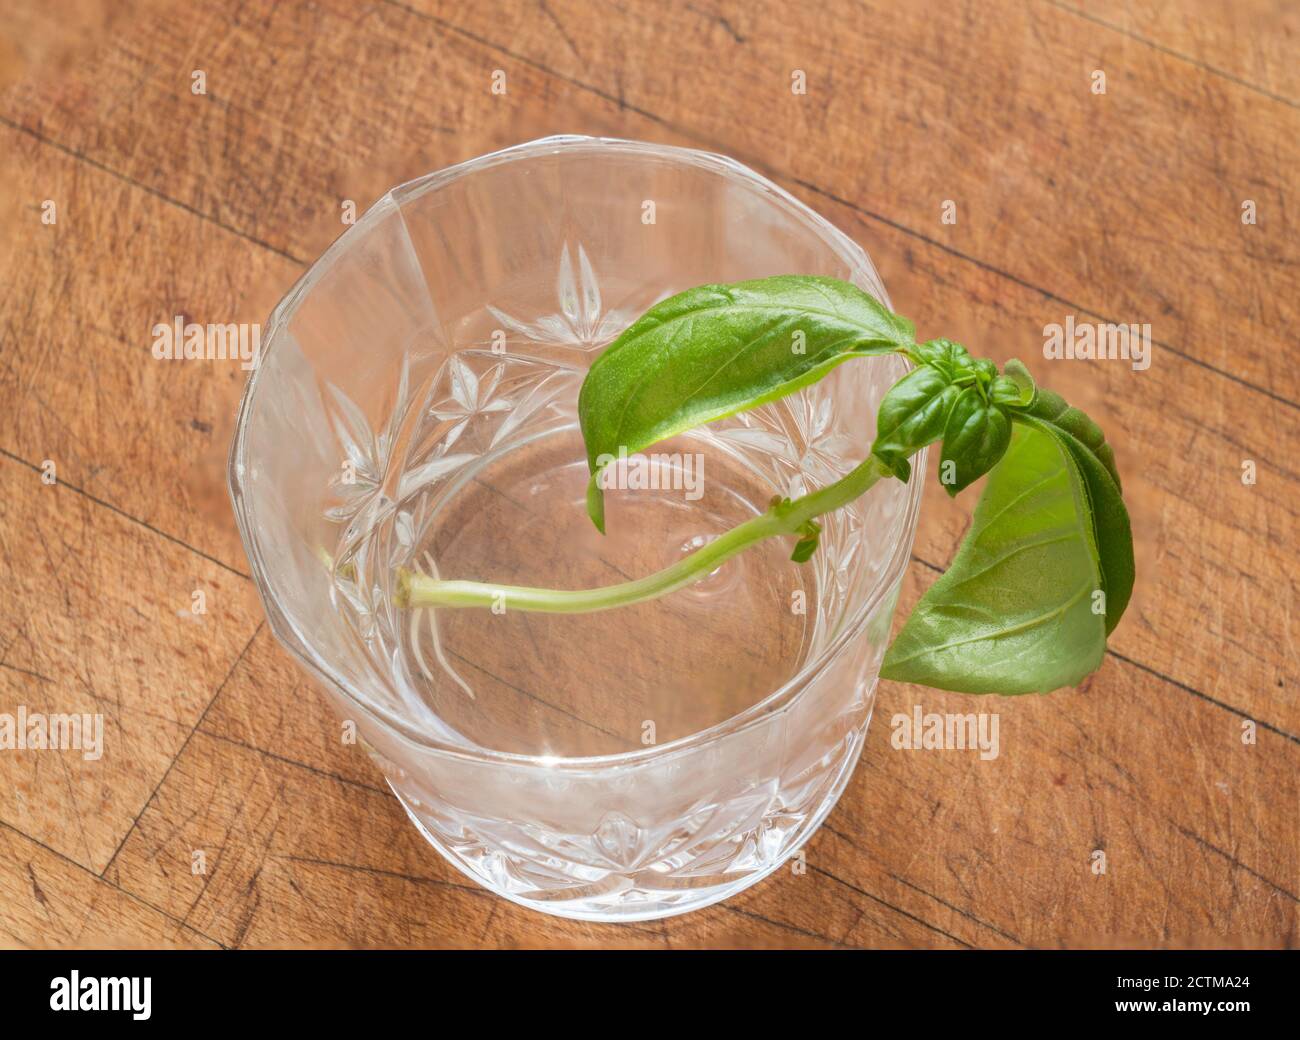 Ocimum basilicum, un basilico che taglia le radici in un bicchiere d'acqua Foto Stock